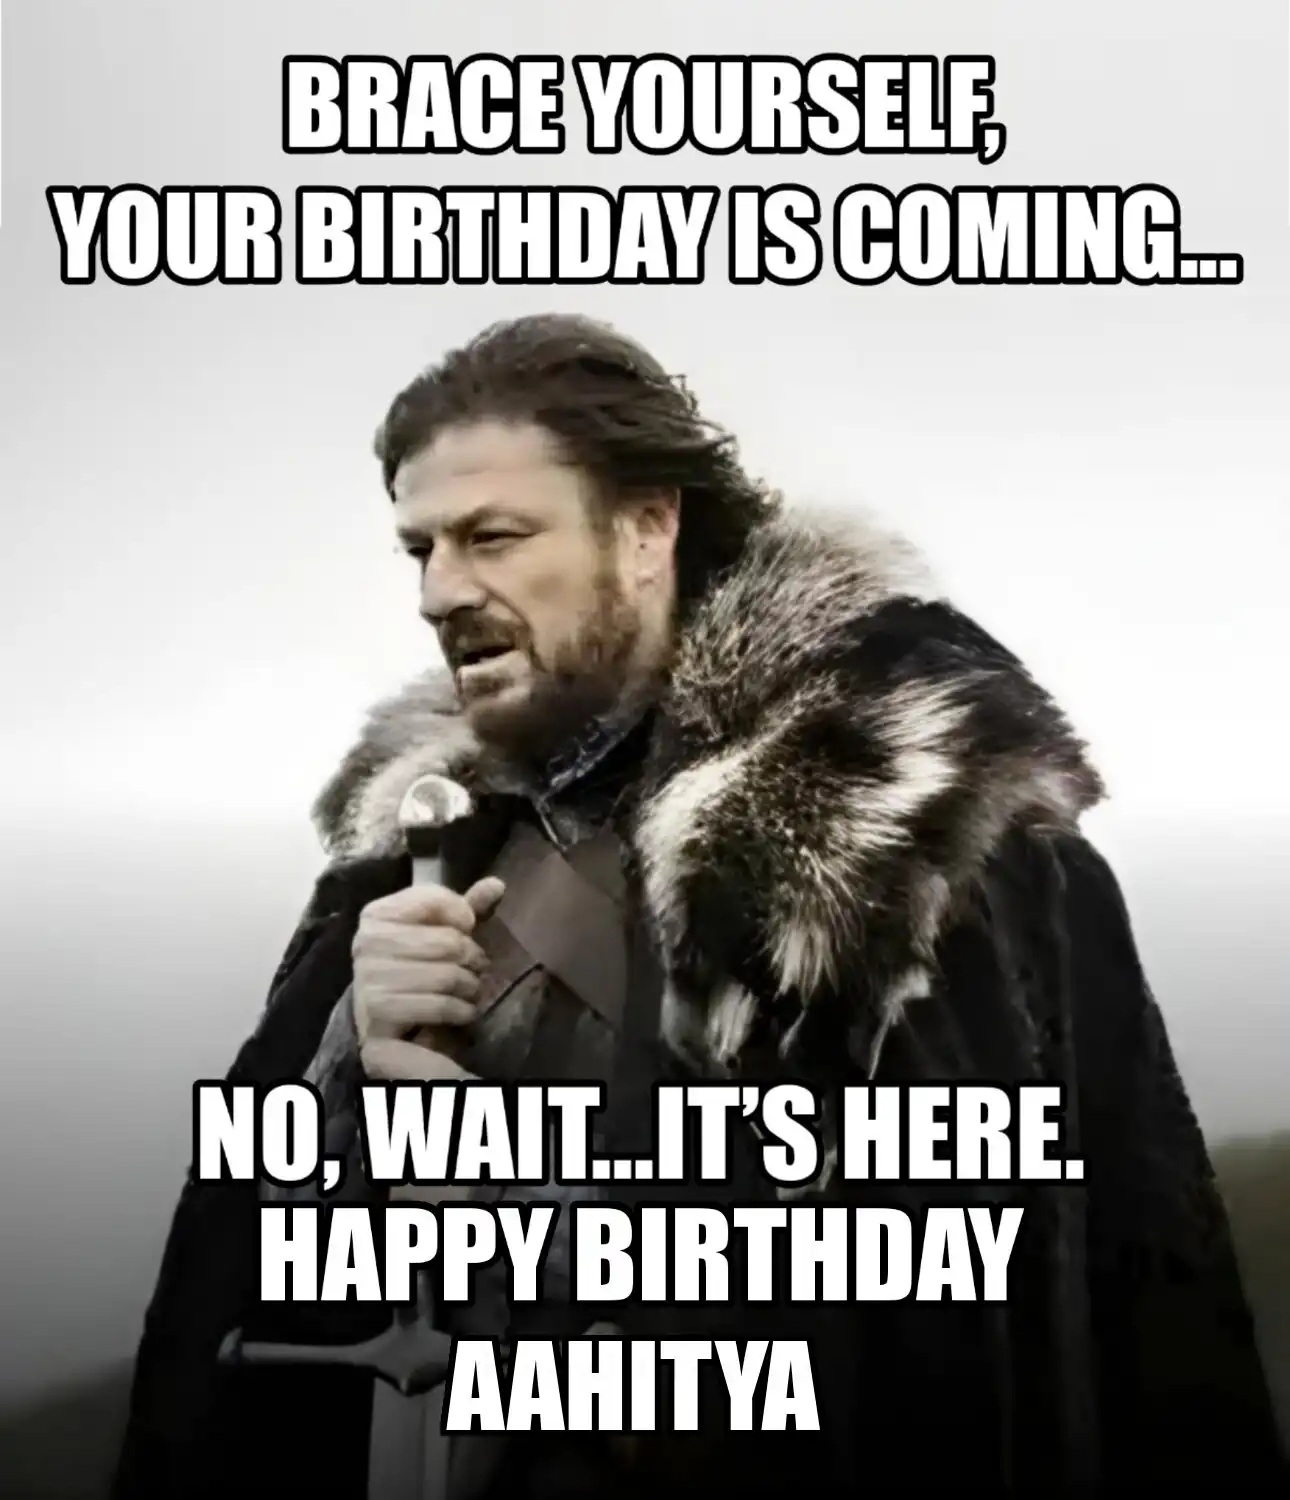 Happy Birthday Aahitya Brace Yourself Your Birthday Is Coming Meme